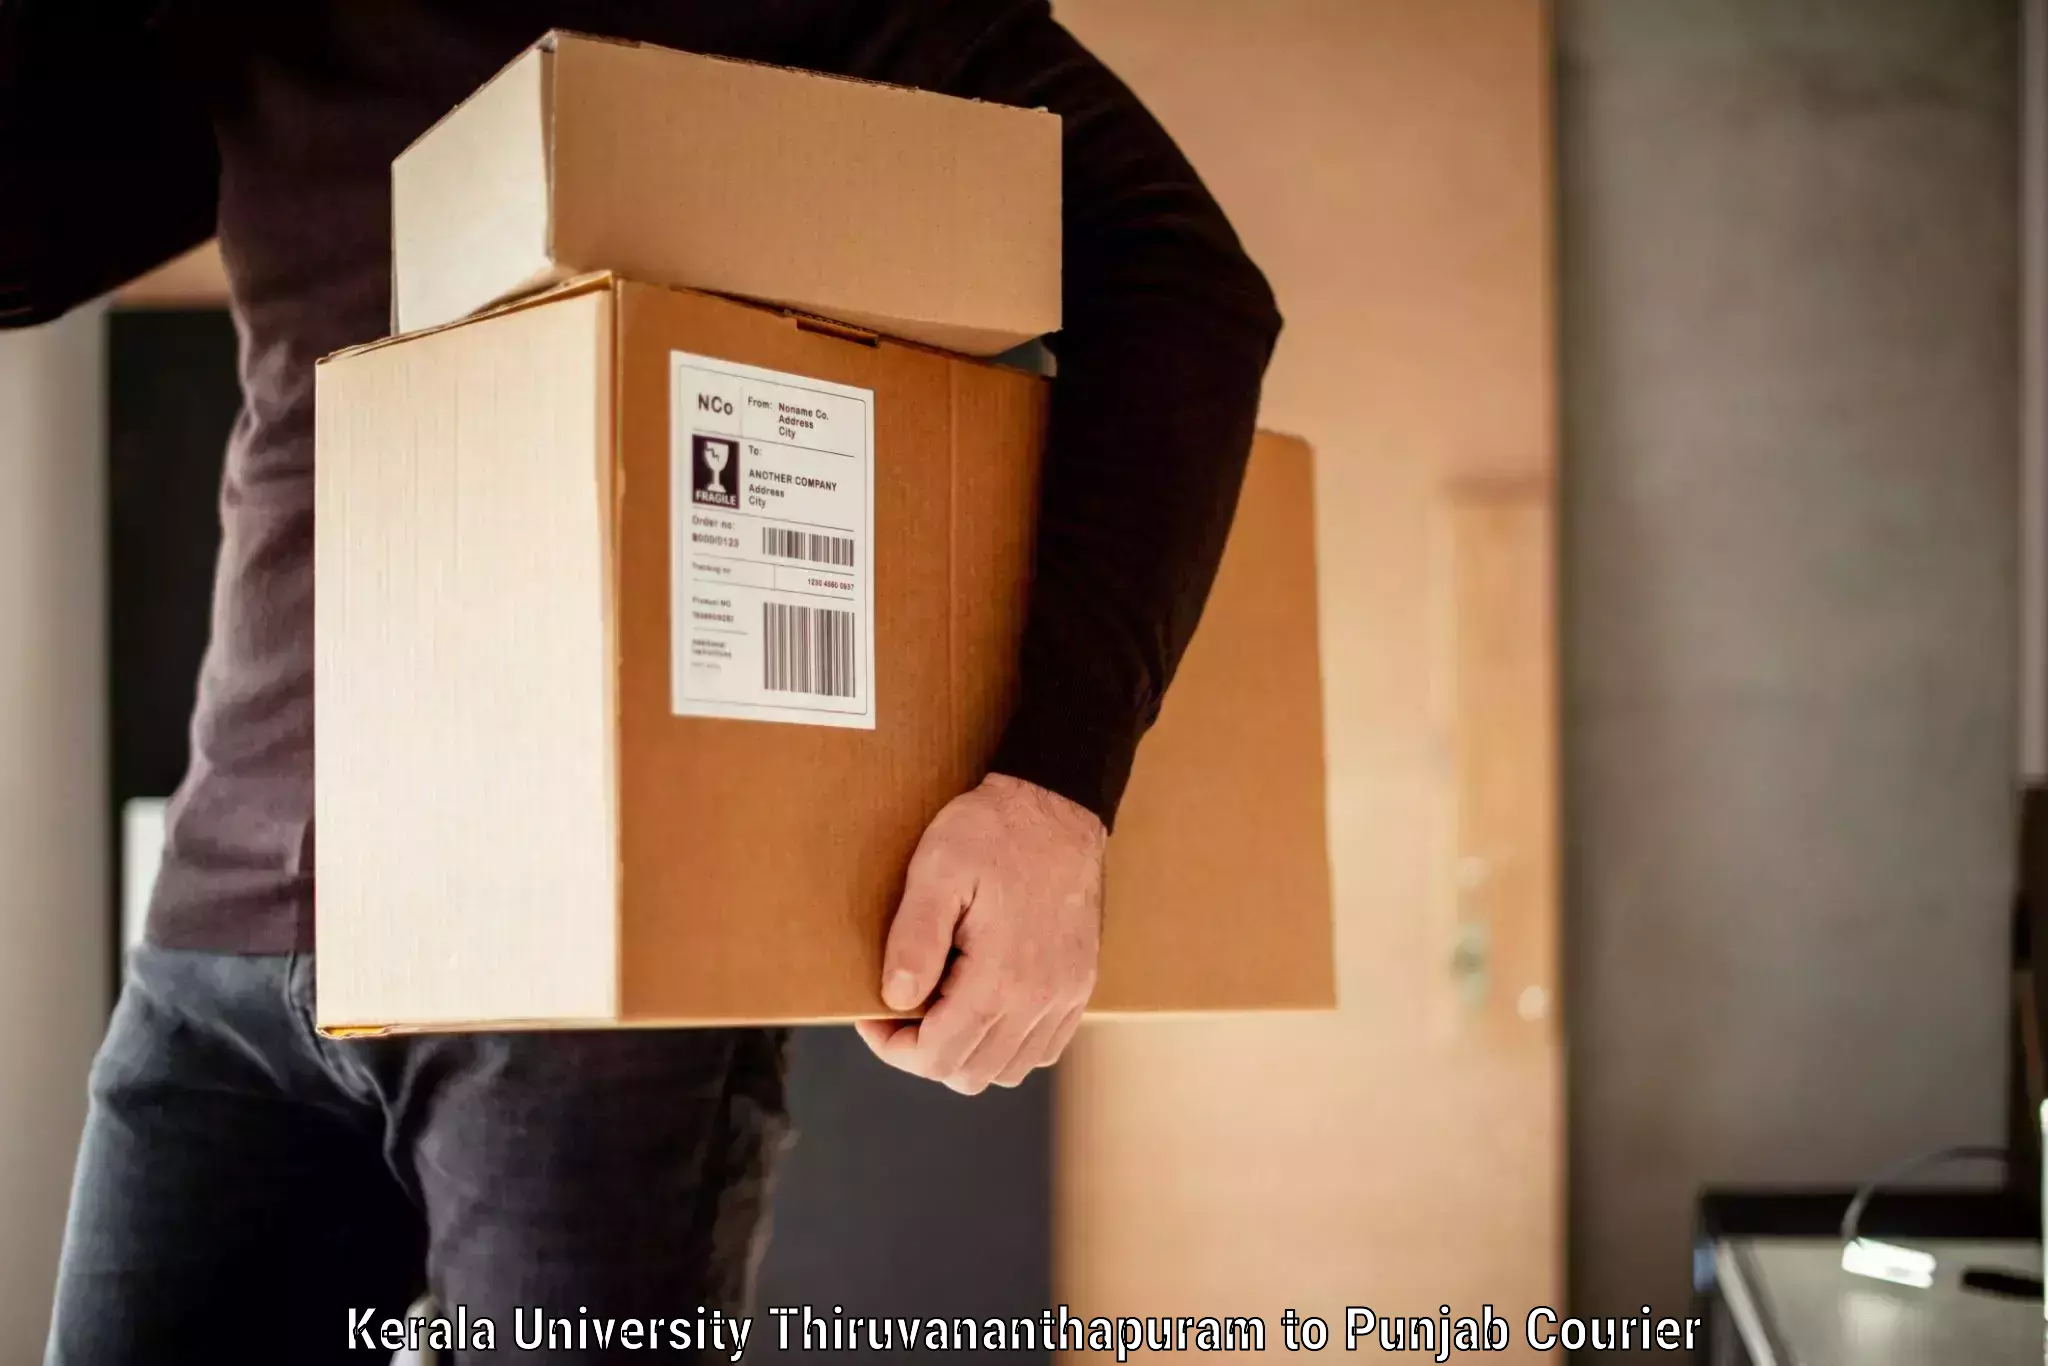 Baggage shipping logistics in Kerala University Thiruvananthapuram to Dera Bassi